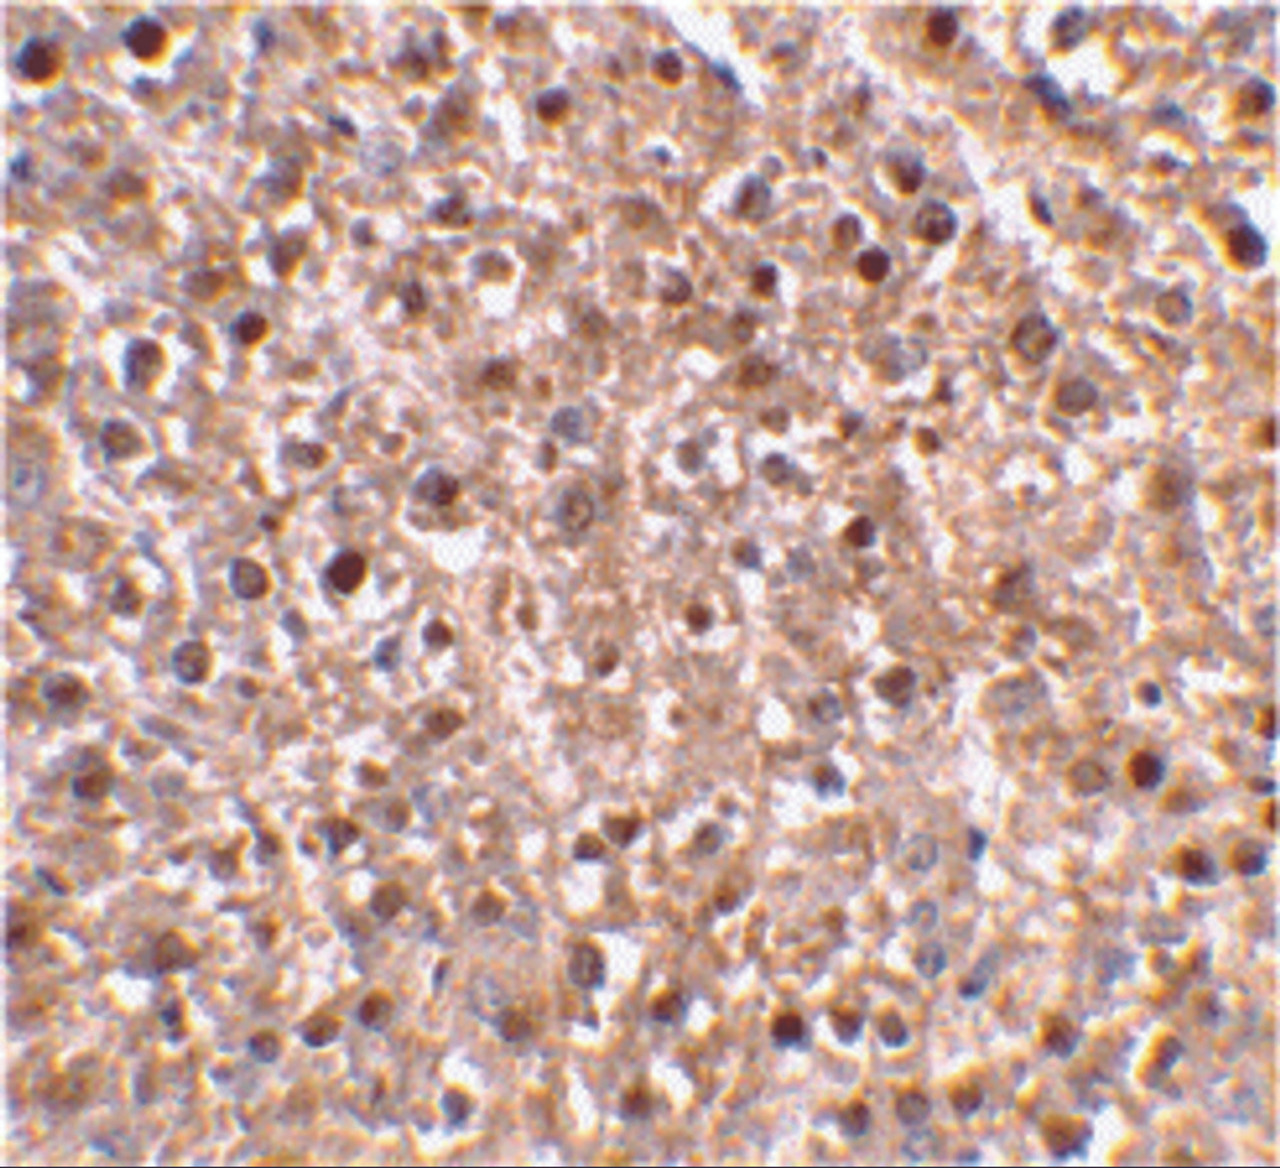 Immunohistochemical staining of mouse liver tissue using caspase-12 antibody at 2 ug/mL.